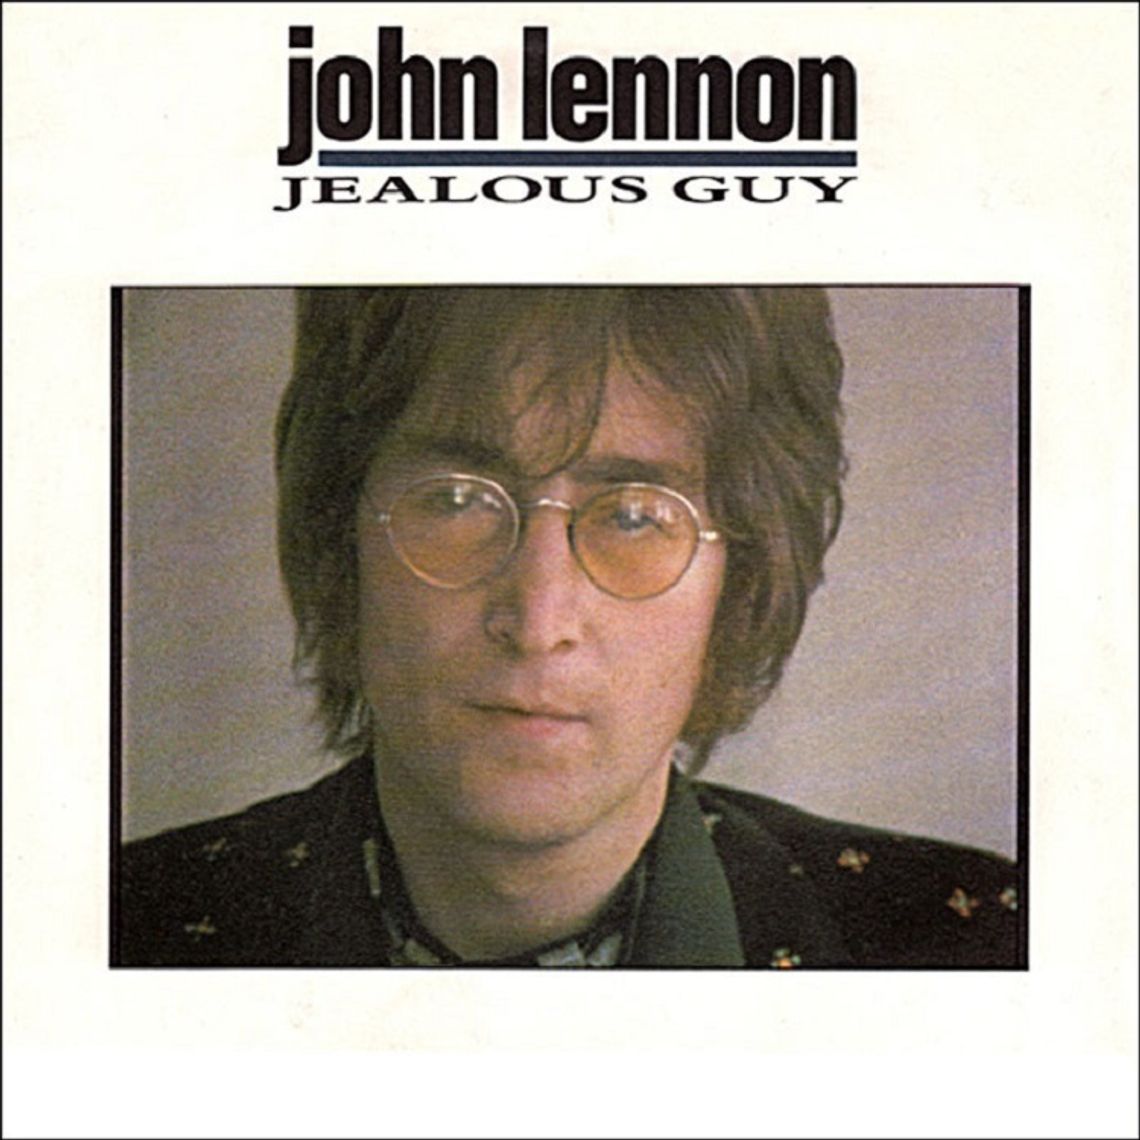 JOHN LENNON "Jealous guy"